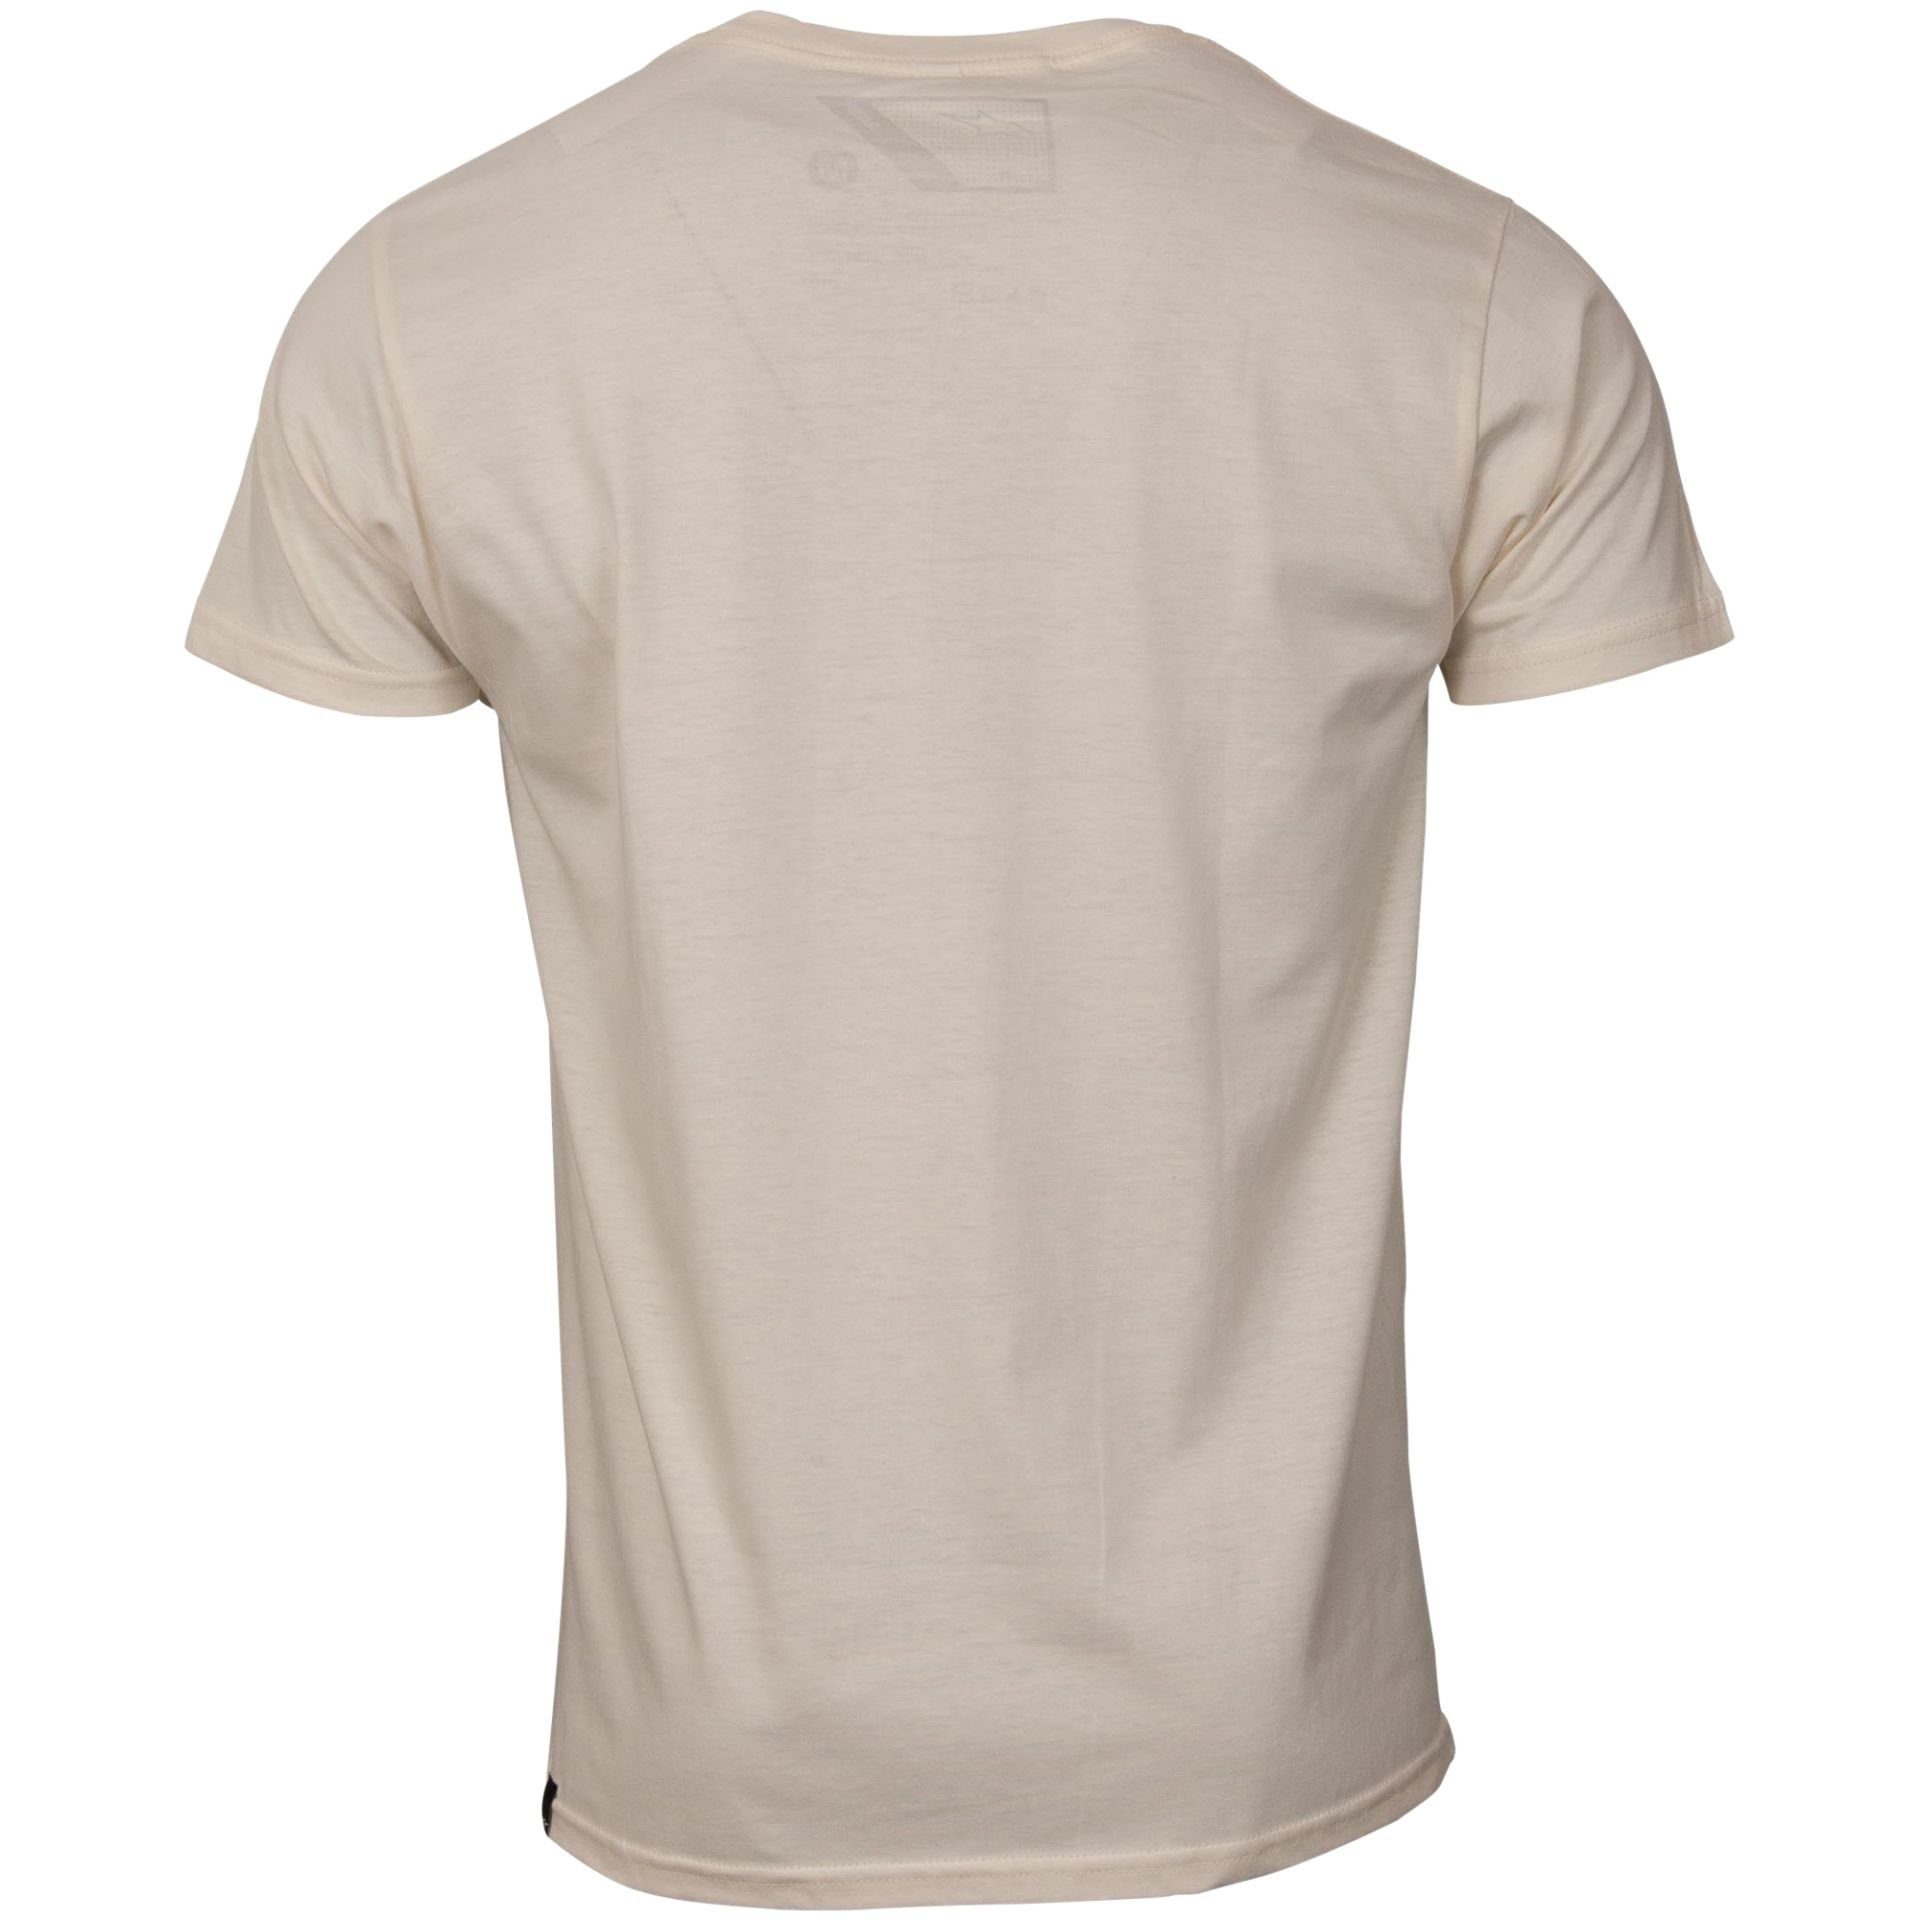 Alpinestars Ride Baumwolle (Beige) Sand T-Shirt 2.0